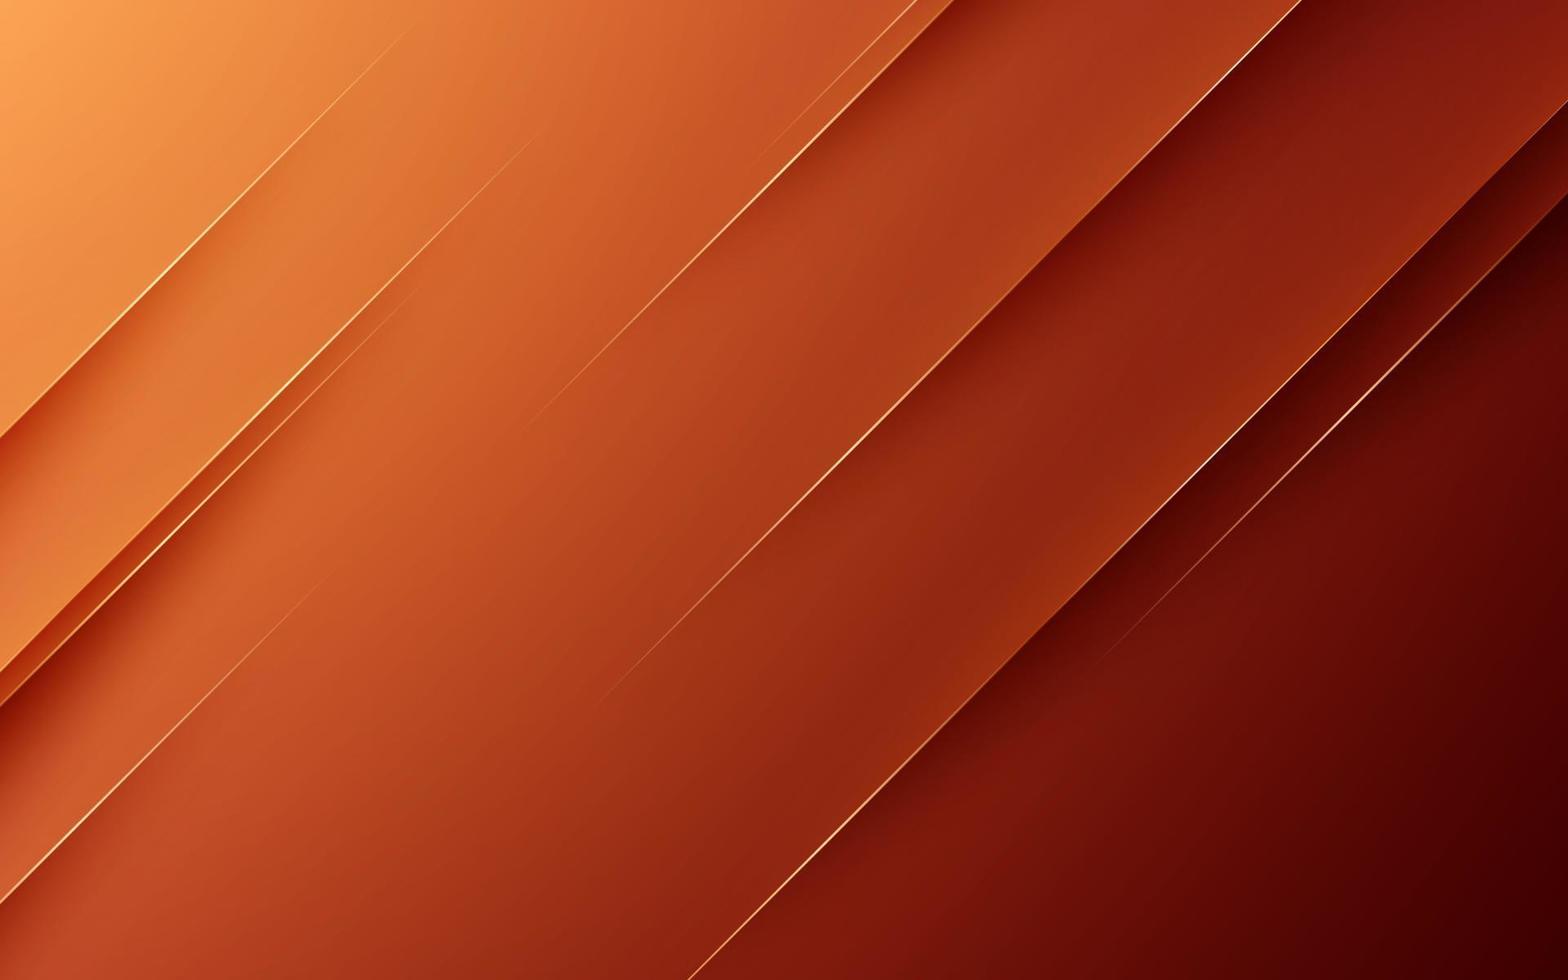 listra diagonal laranja escura moderna abstrata com sombra e luz background.eps10 vector